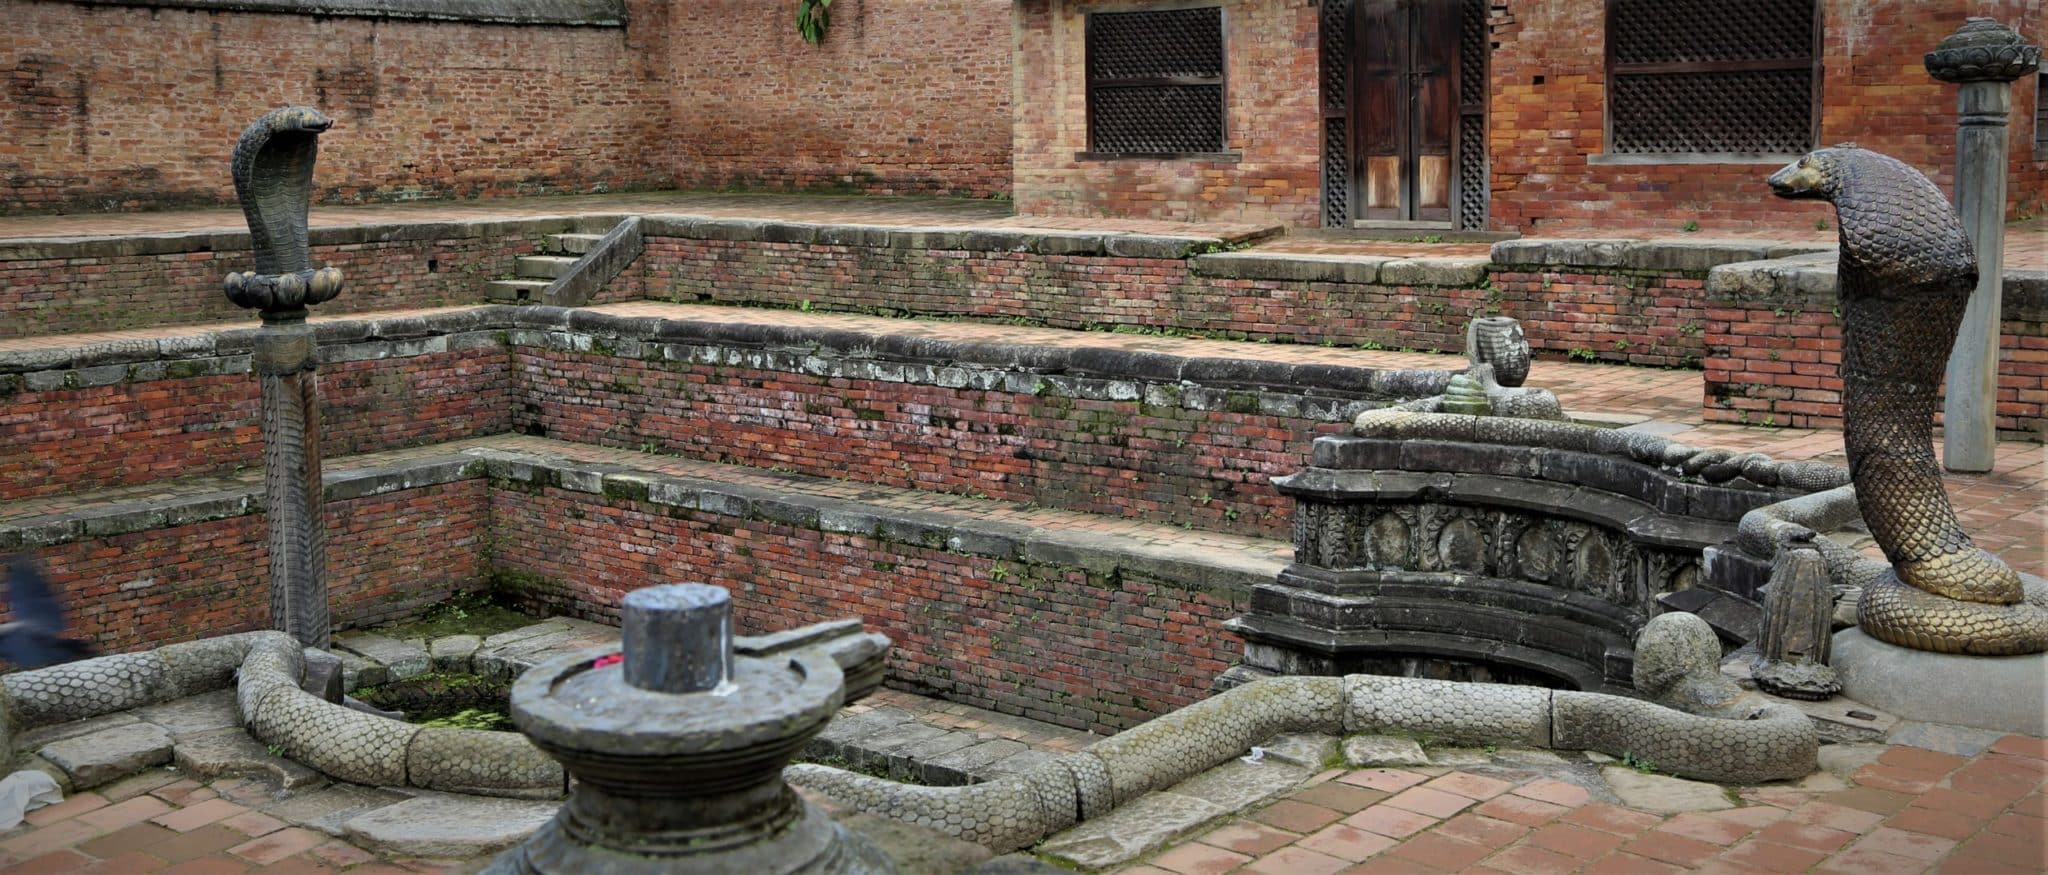 Bhaktapur bassin aux serpents du palais royal